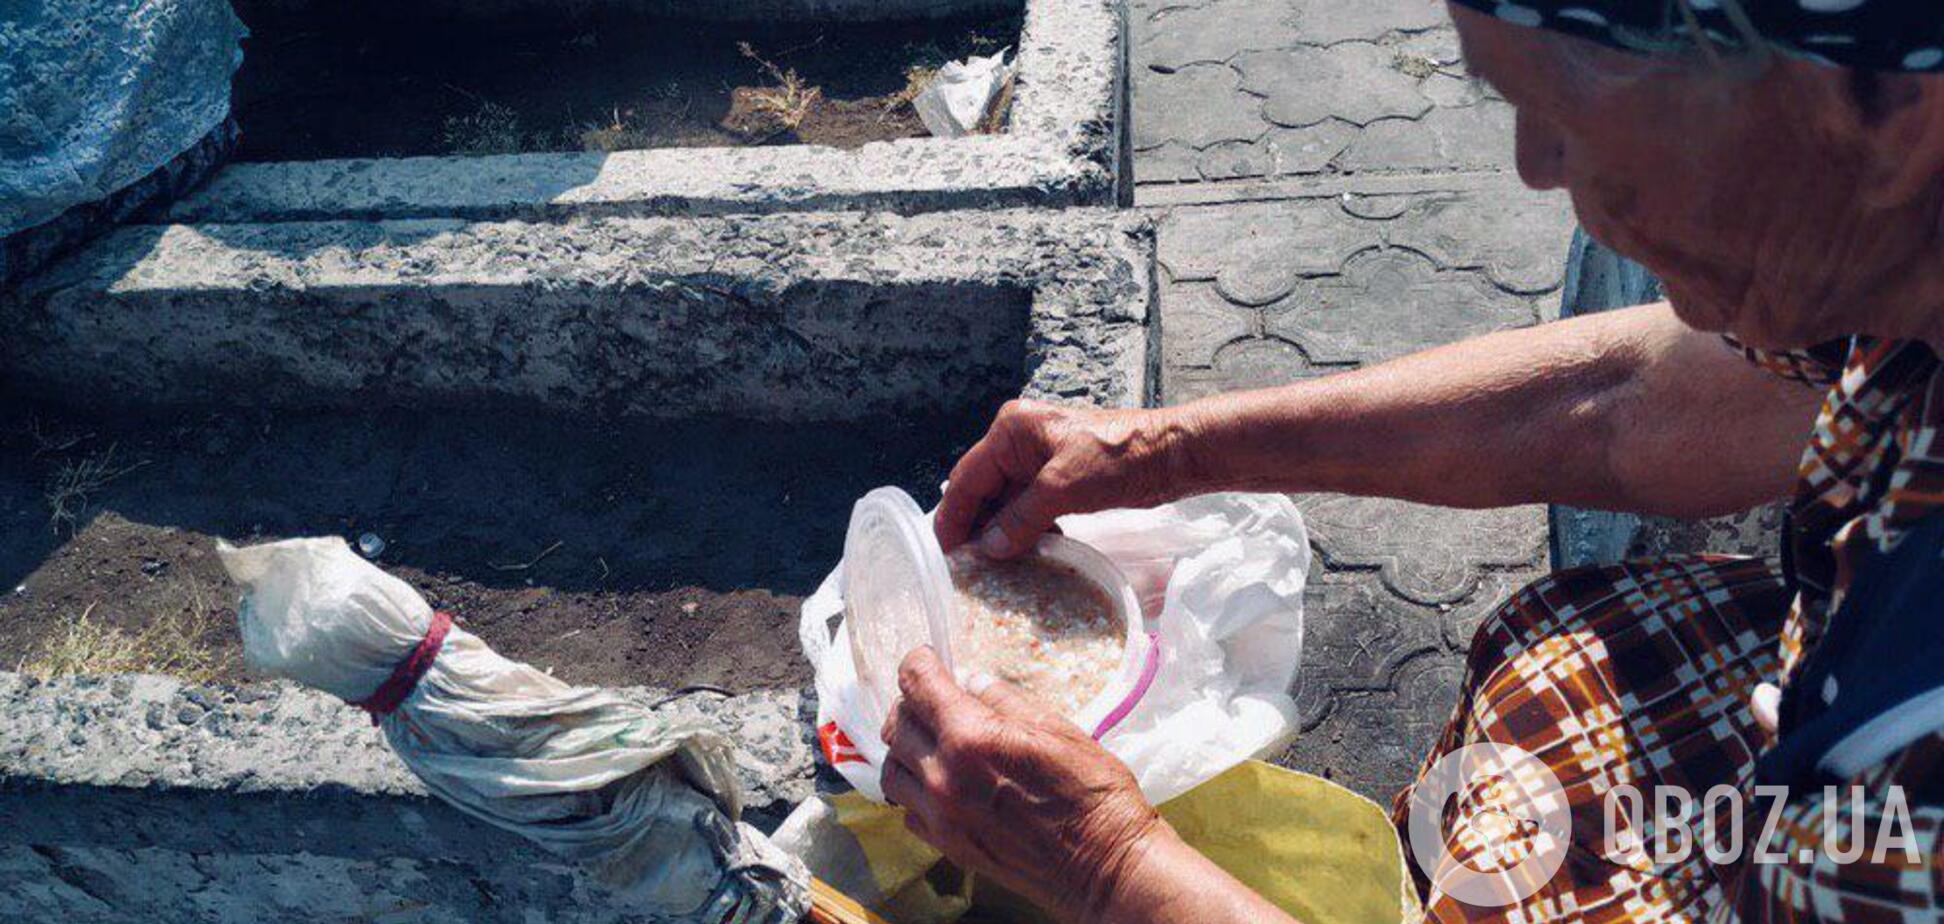 Де в Дніпрі безкоштовно годують тих, кому немає чого їсти